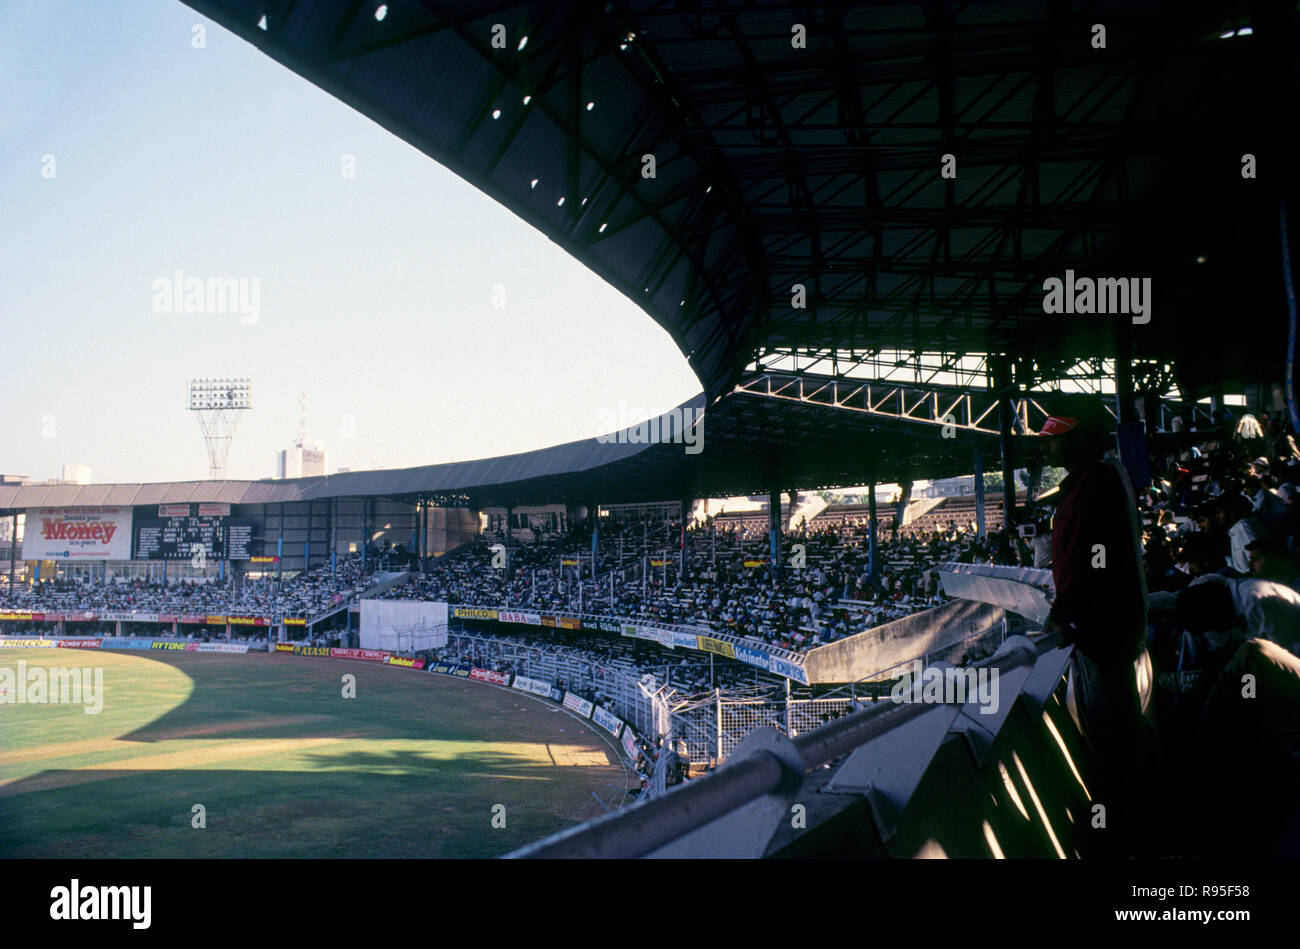 Cricket match, India versus England, Wankhede Stadium, Bombay, Mumbai, Maharashtra, India, Asia, 1993 Stock Photo